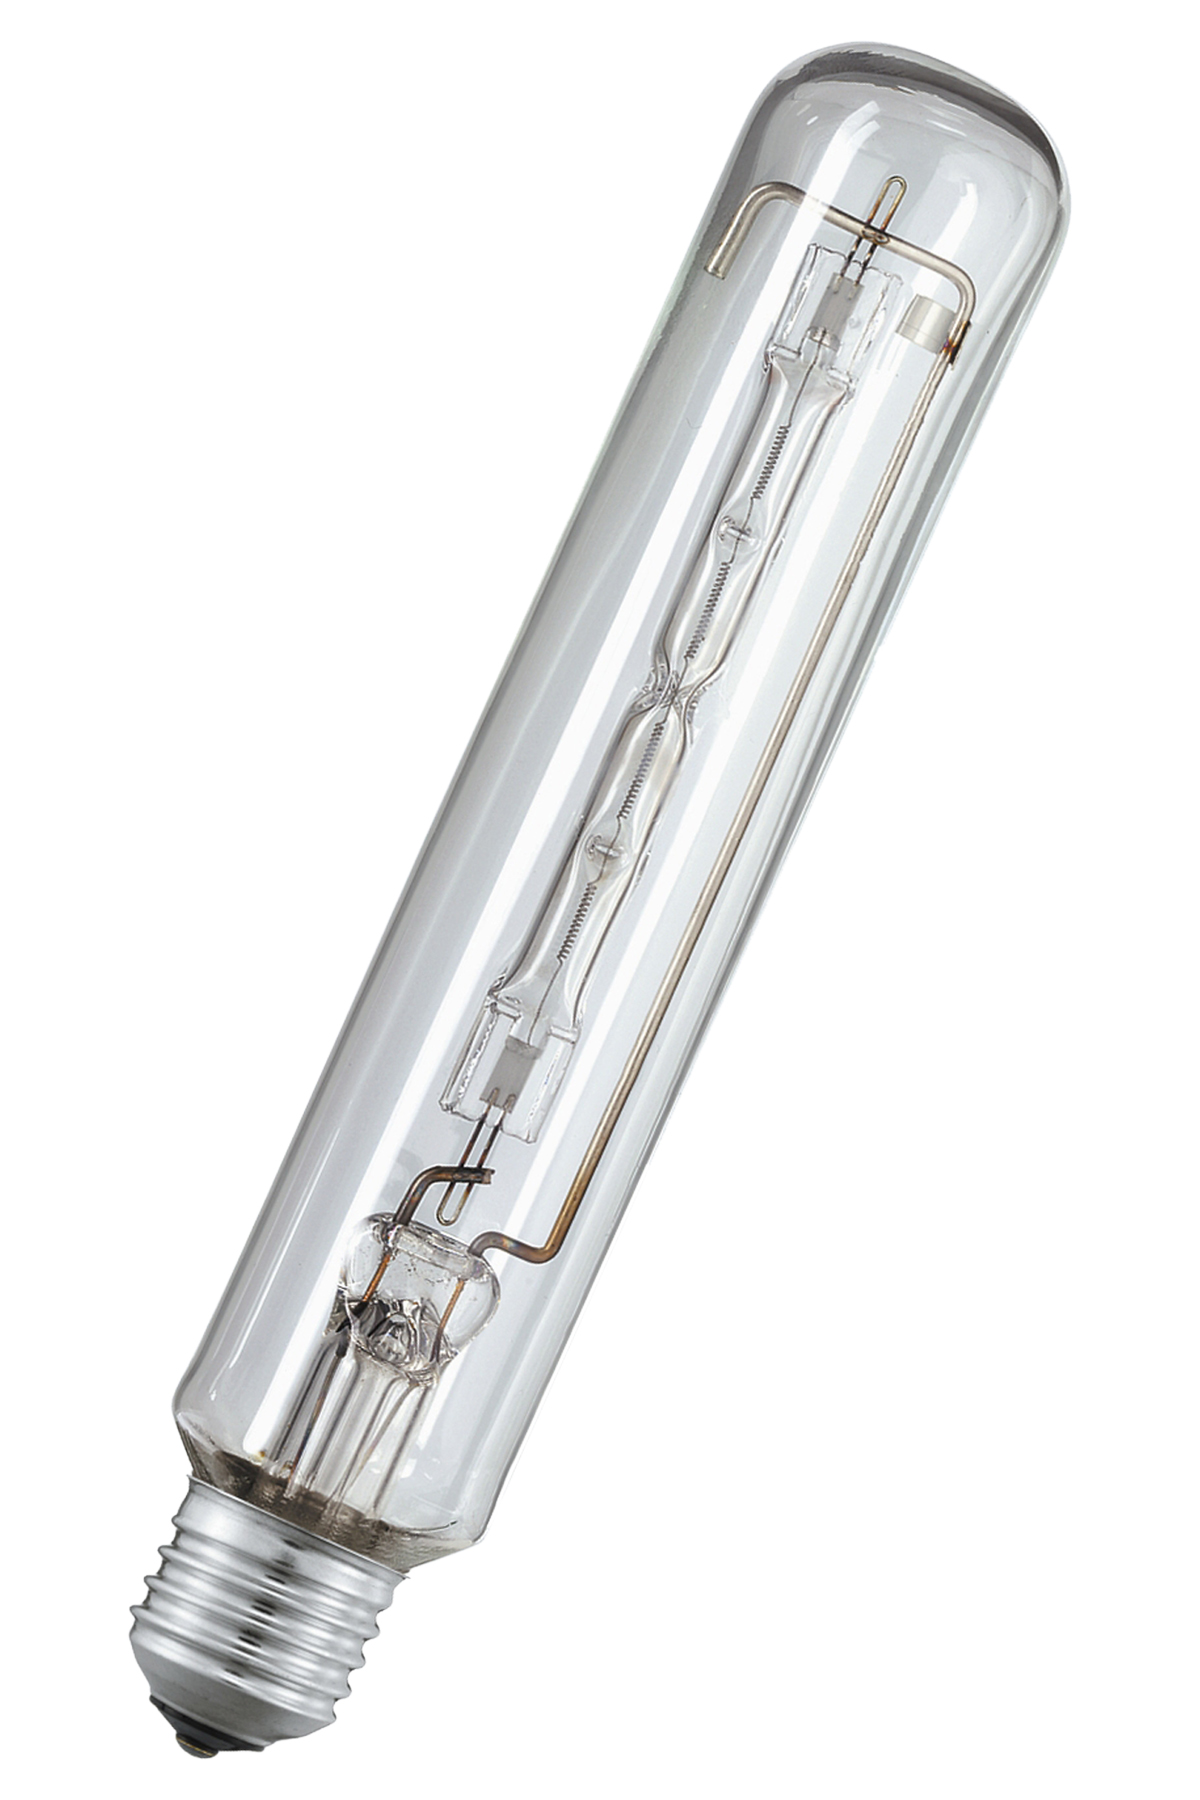 JTT Tubular Tungsten Halogen Lamp, 220-240V 500W E40, 791272 - Seaforth  Marine